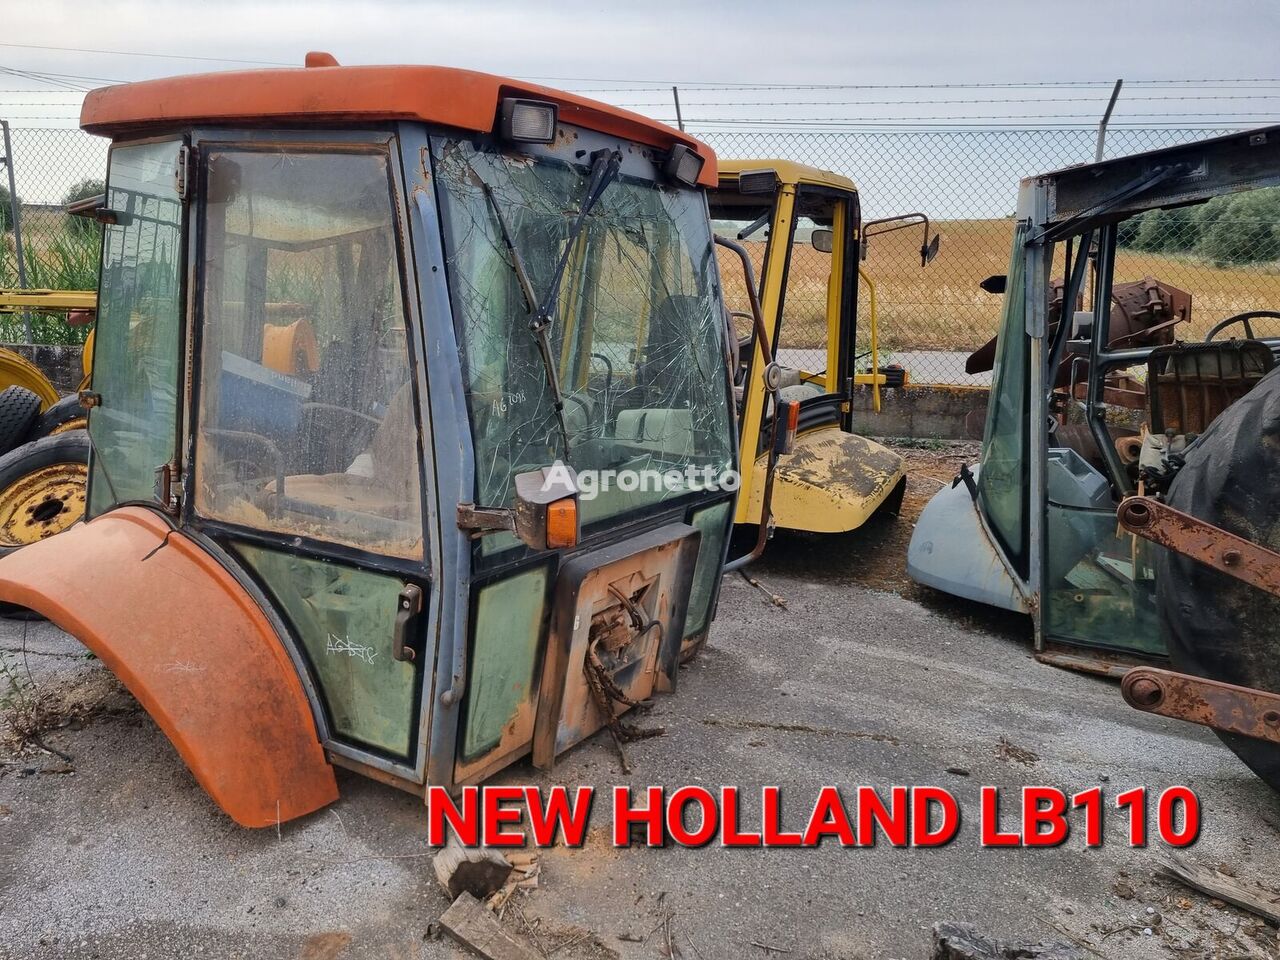 buồng lái New Holland LB110 dành cho máy kéo bánh xích cho phụ tùng